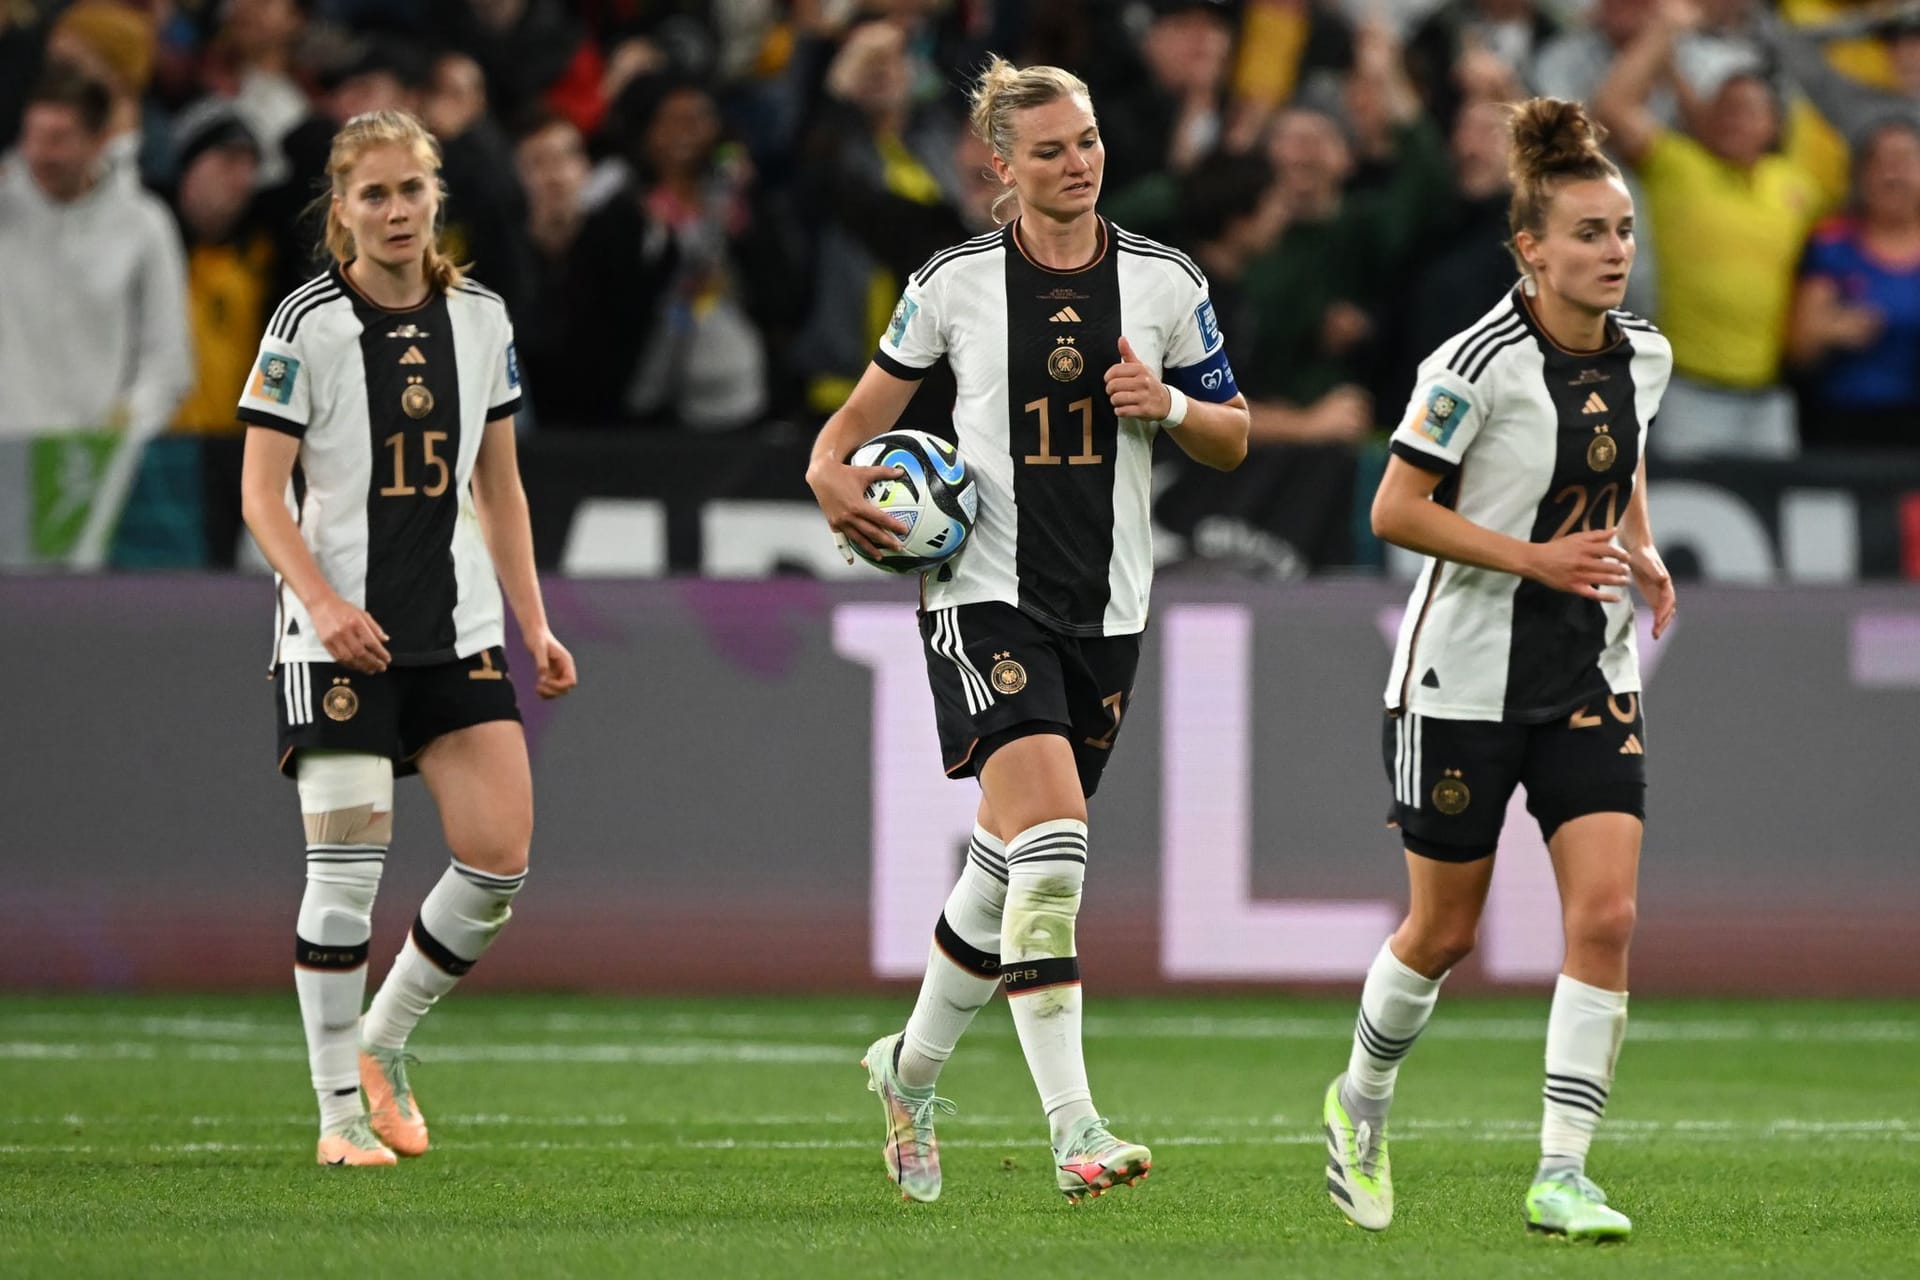 Gegen Kolumbien tat sich das deutsche Team lange schwer, kam zum Ausgleich – und verlor am Ende doch. Die Einzelkritik.